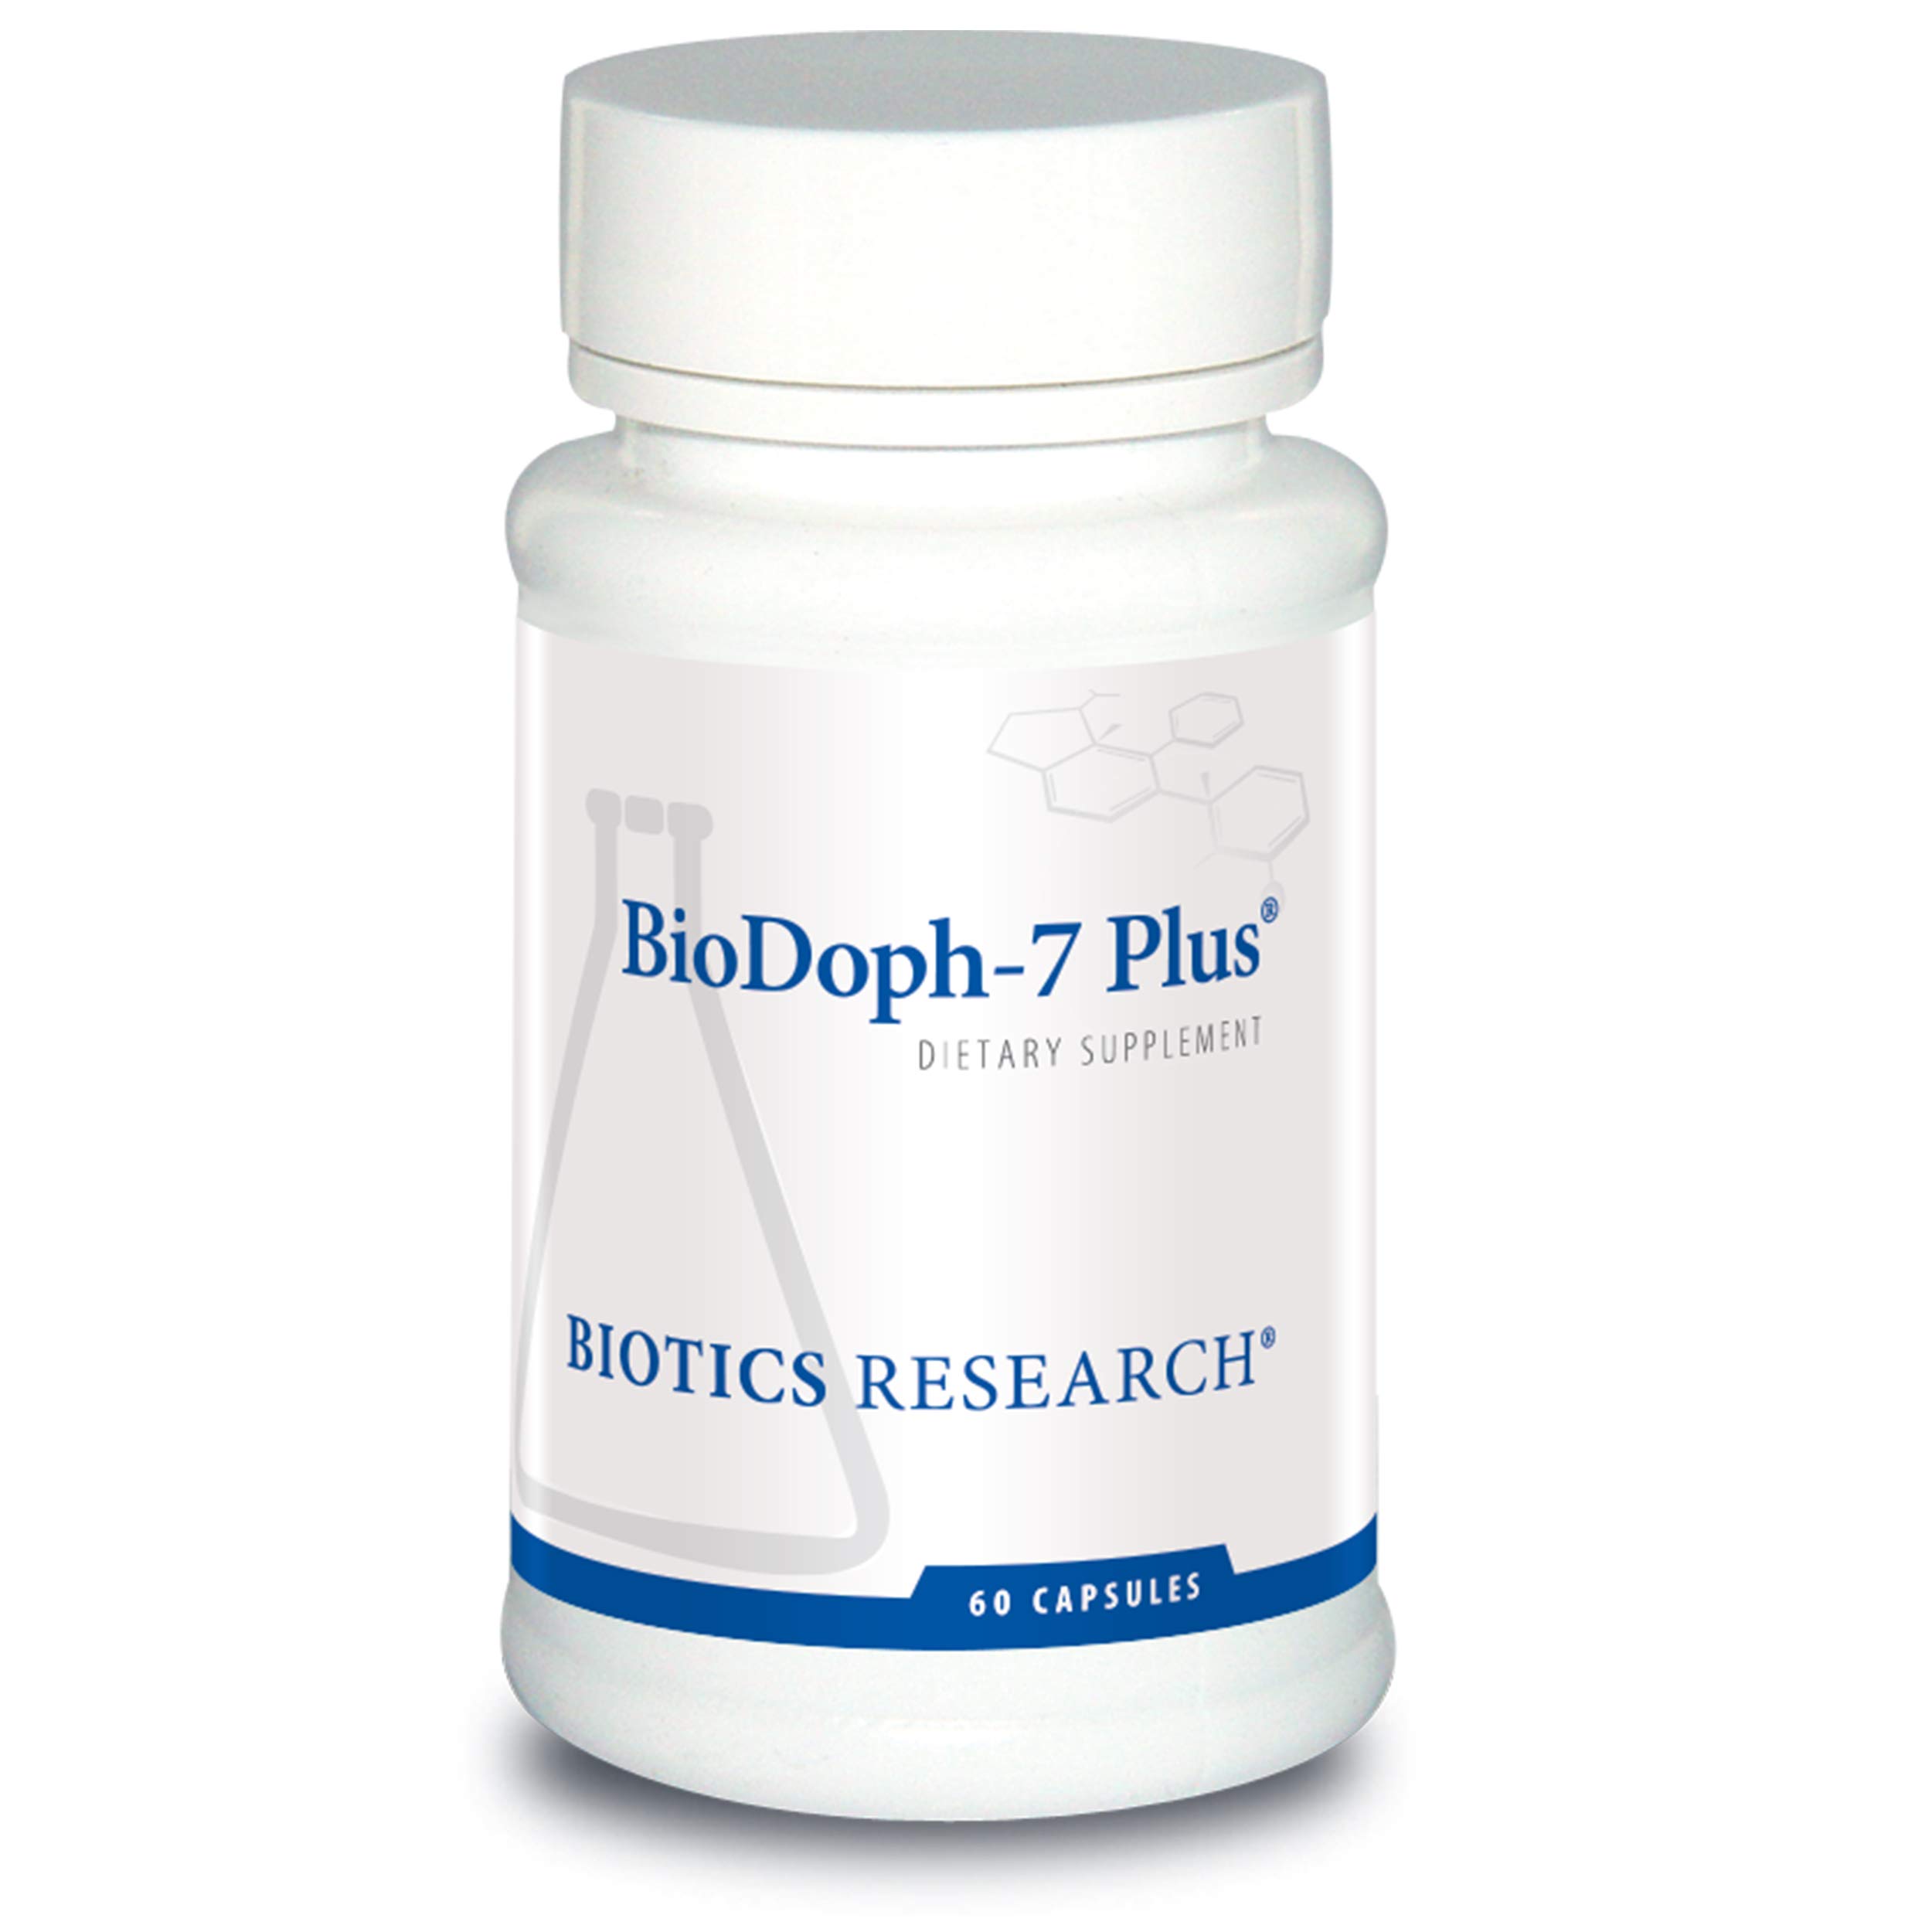 Biotics Research BioDoph-7 Plus (60 Capsules)